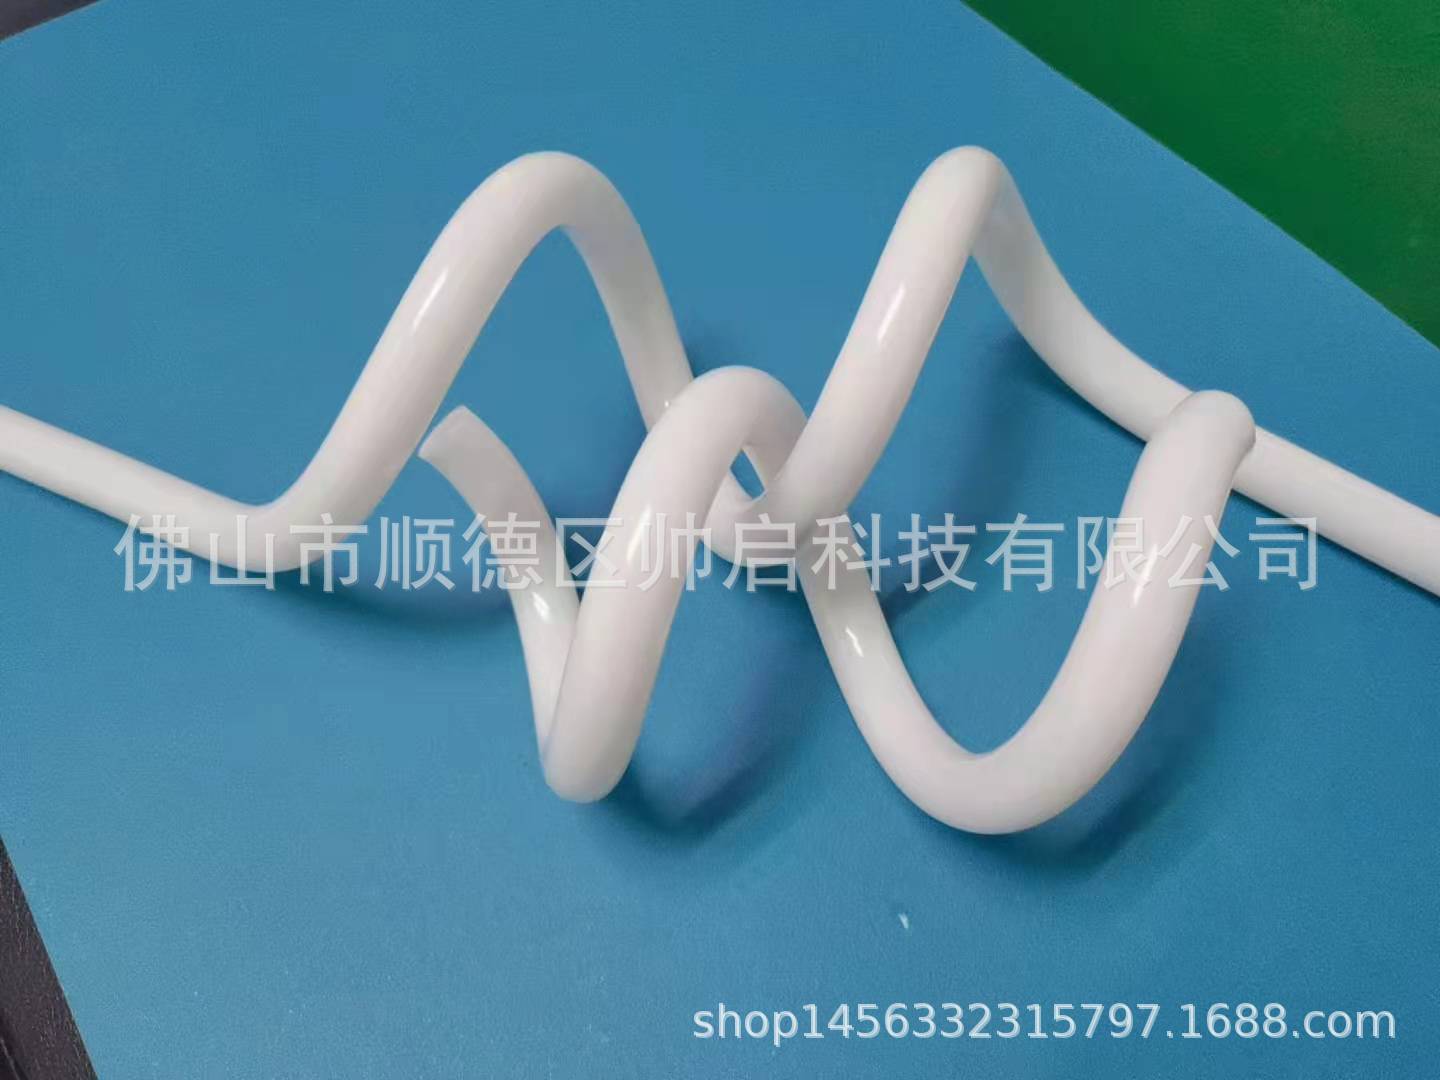 塑料弯管 塑胶弯管 PVC弯管 PC弯管 螺旋弯管 乳白螺旋弯管